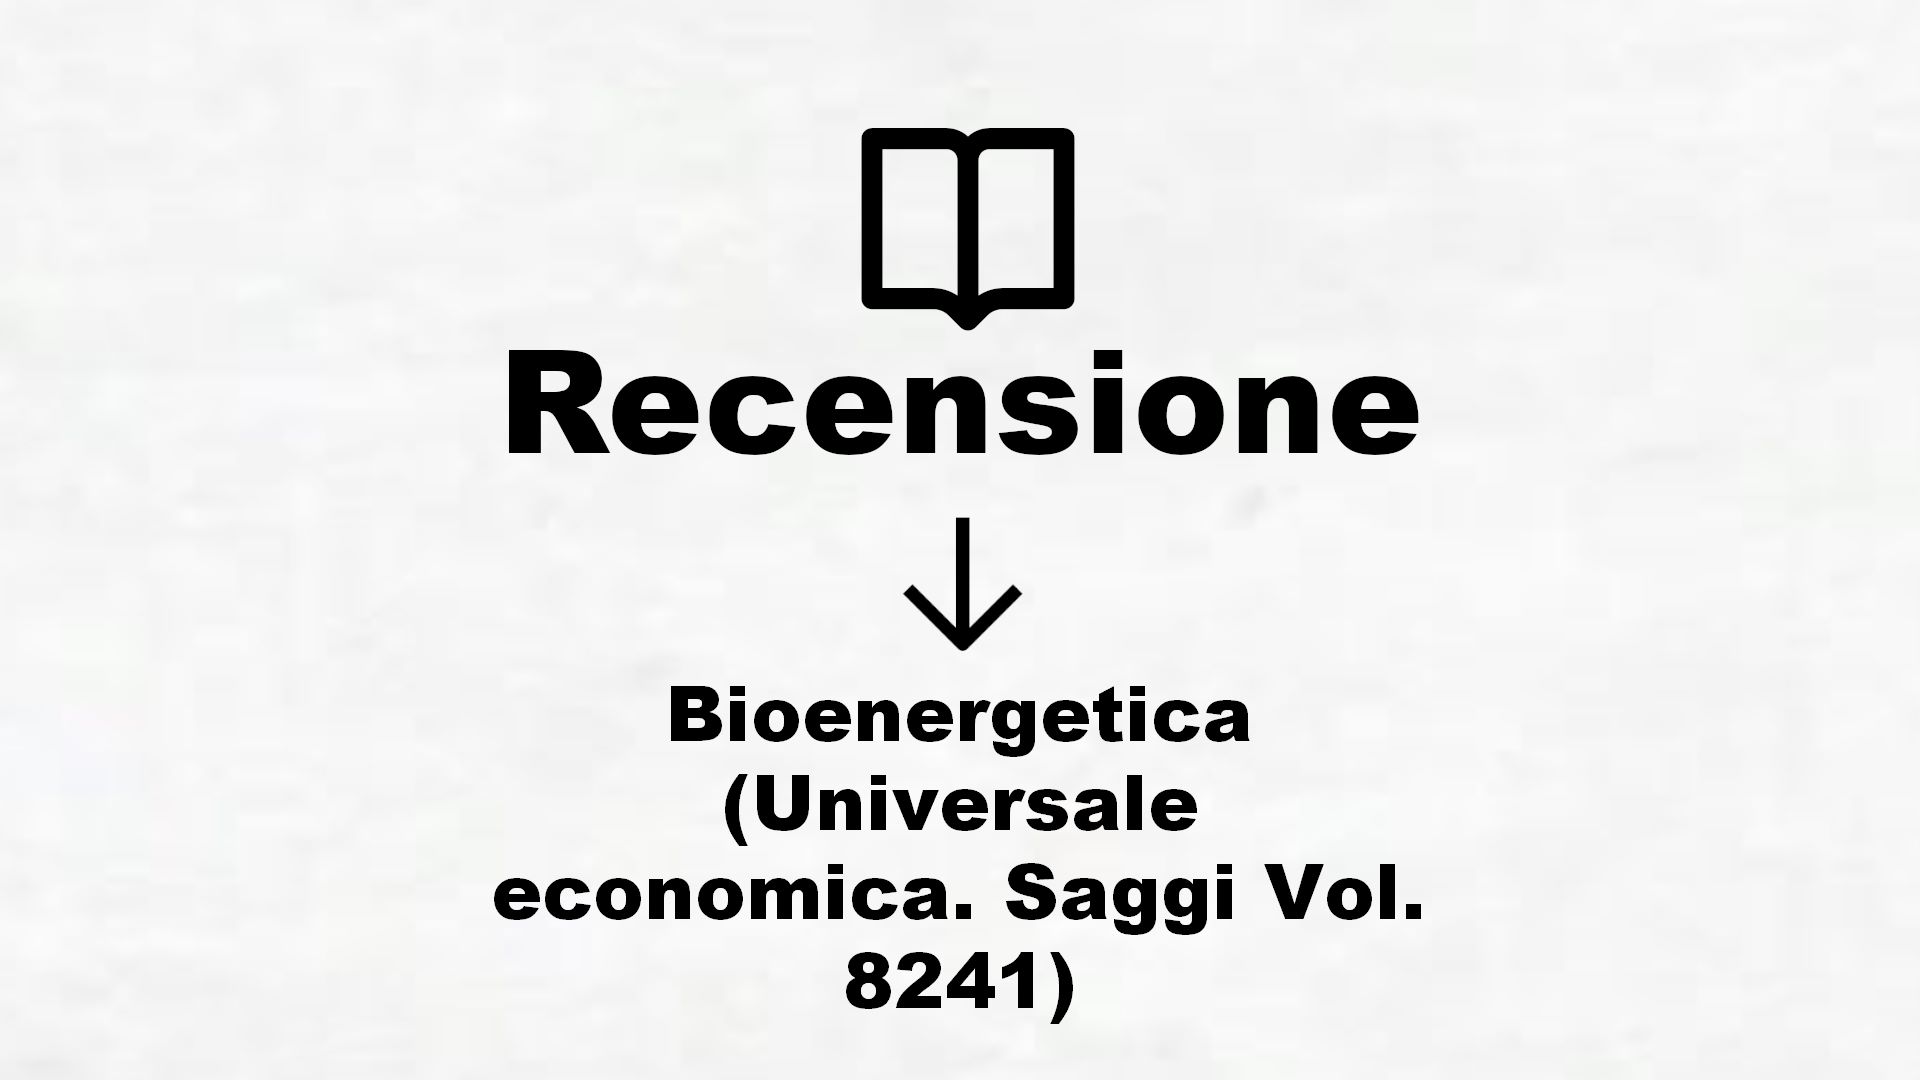 Bioenergetica (Universale economica. Saggi Vol. 8241) – Recensione Libro